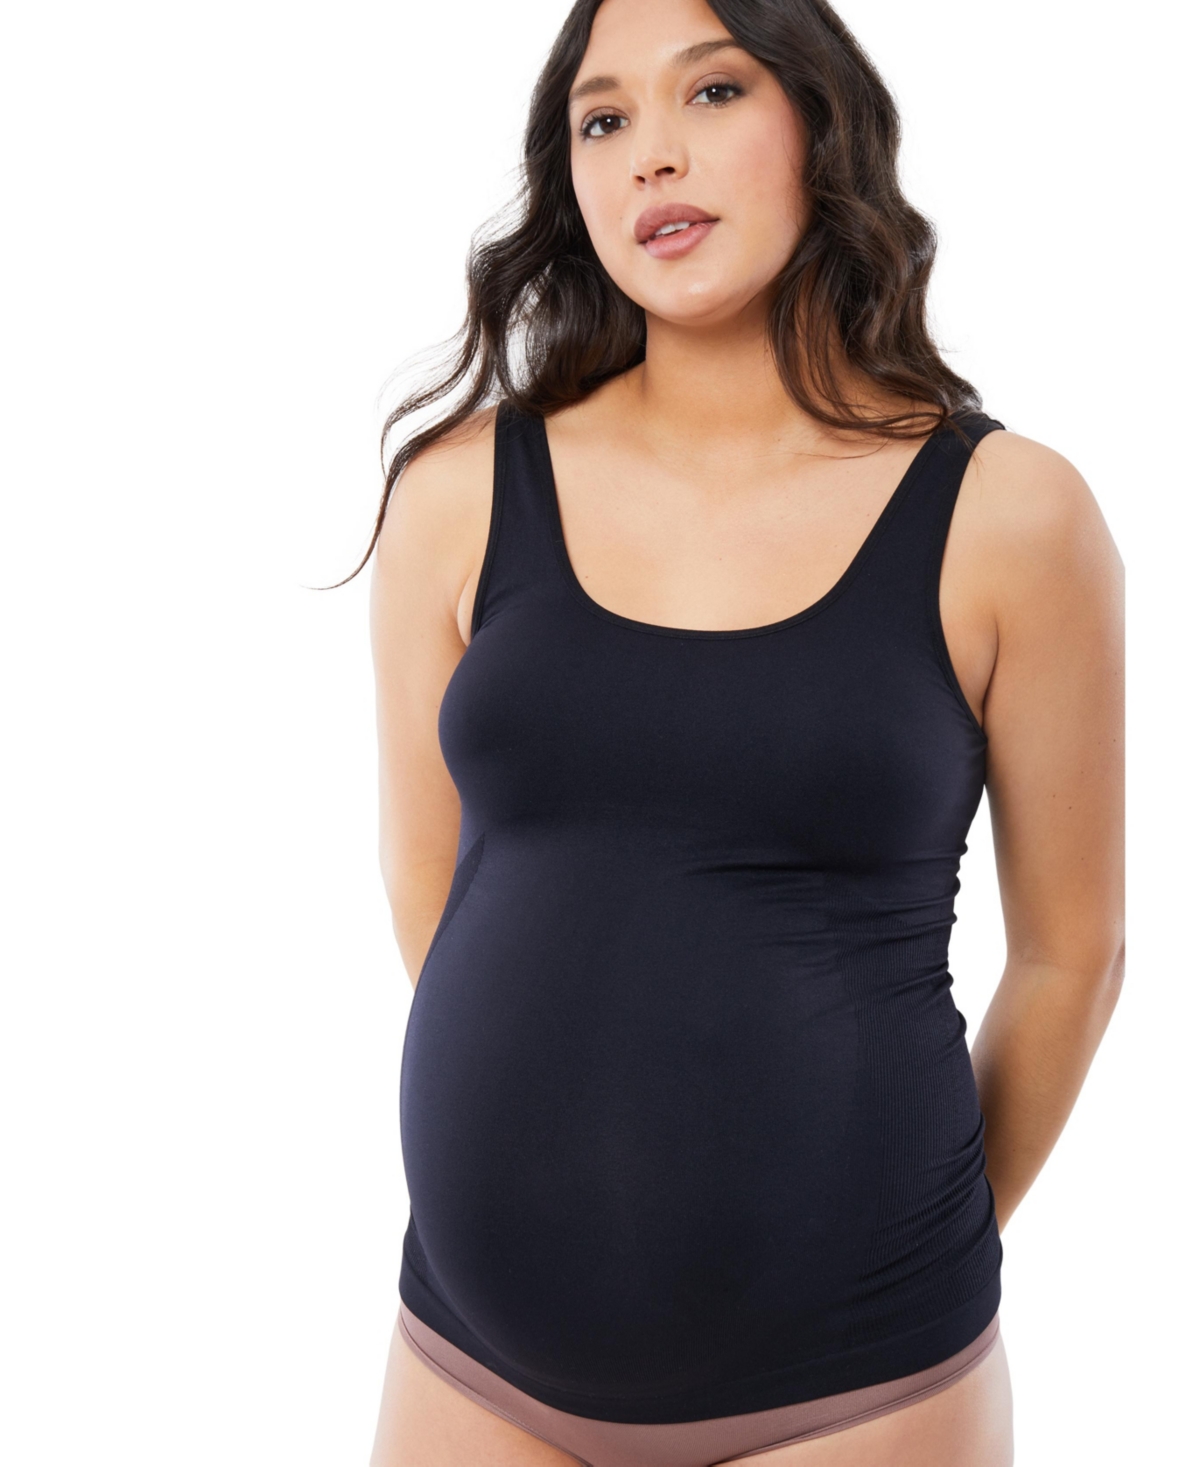 Ingrid + Isabel Women's Maternity Belly Support Cami Bundle - Black